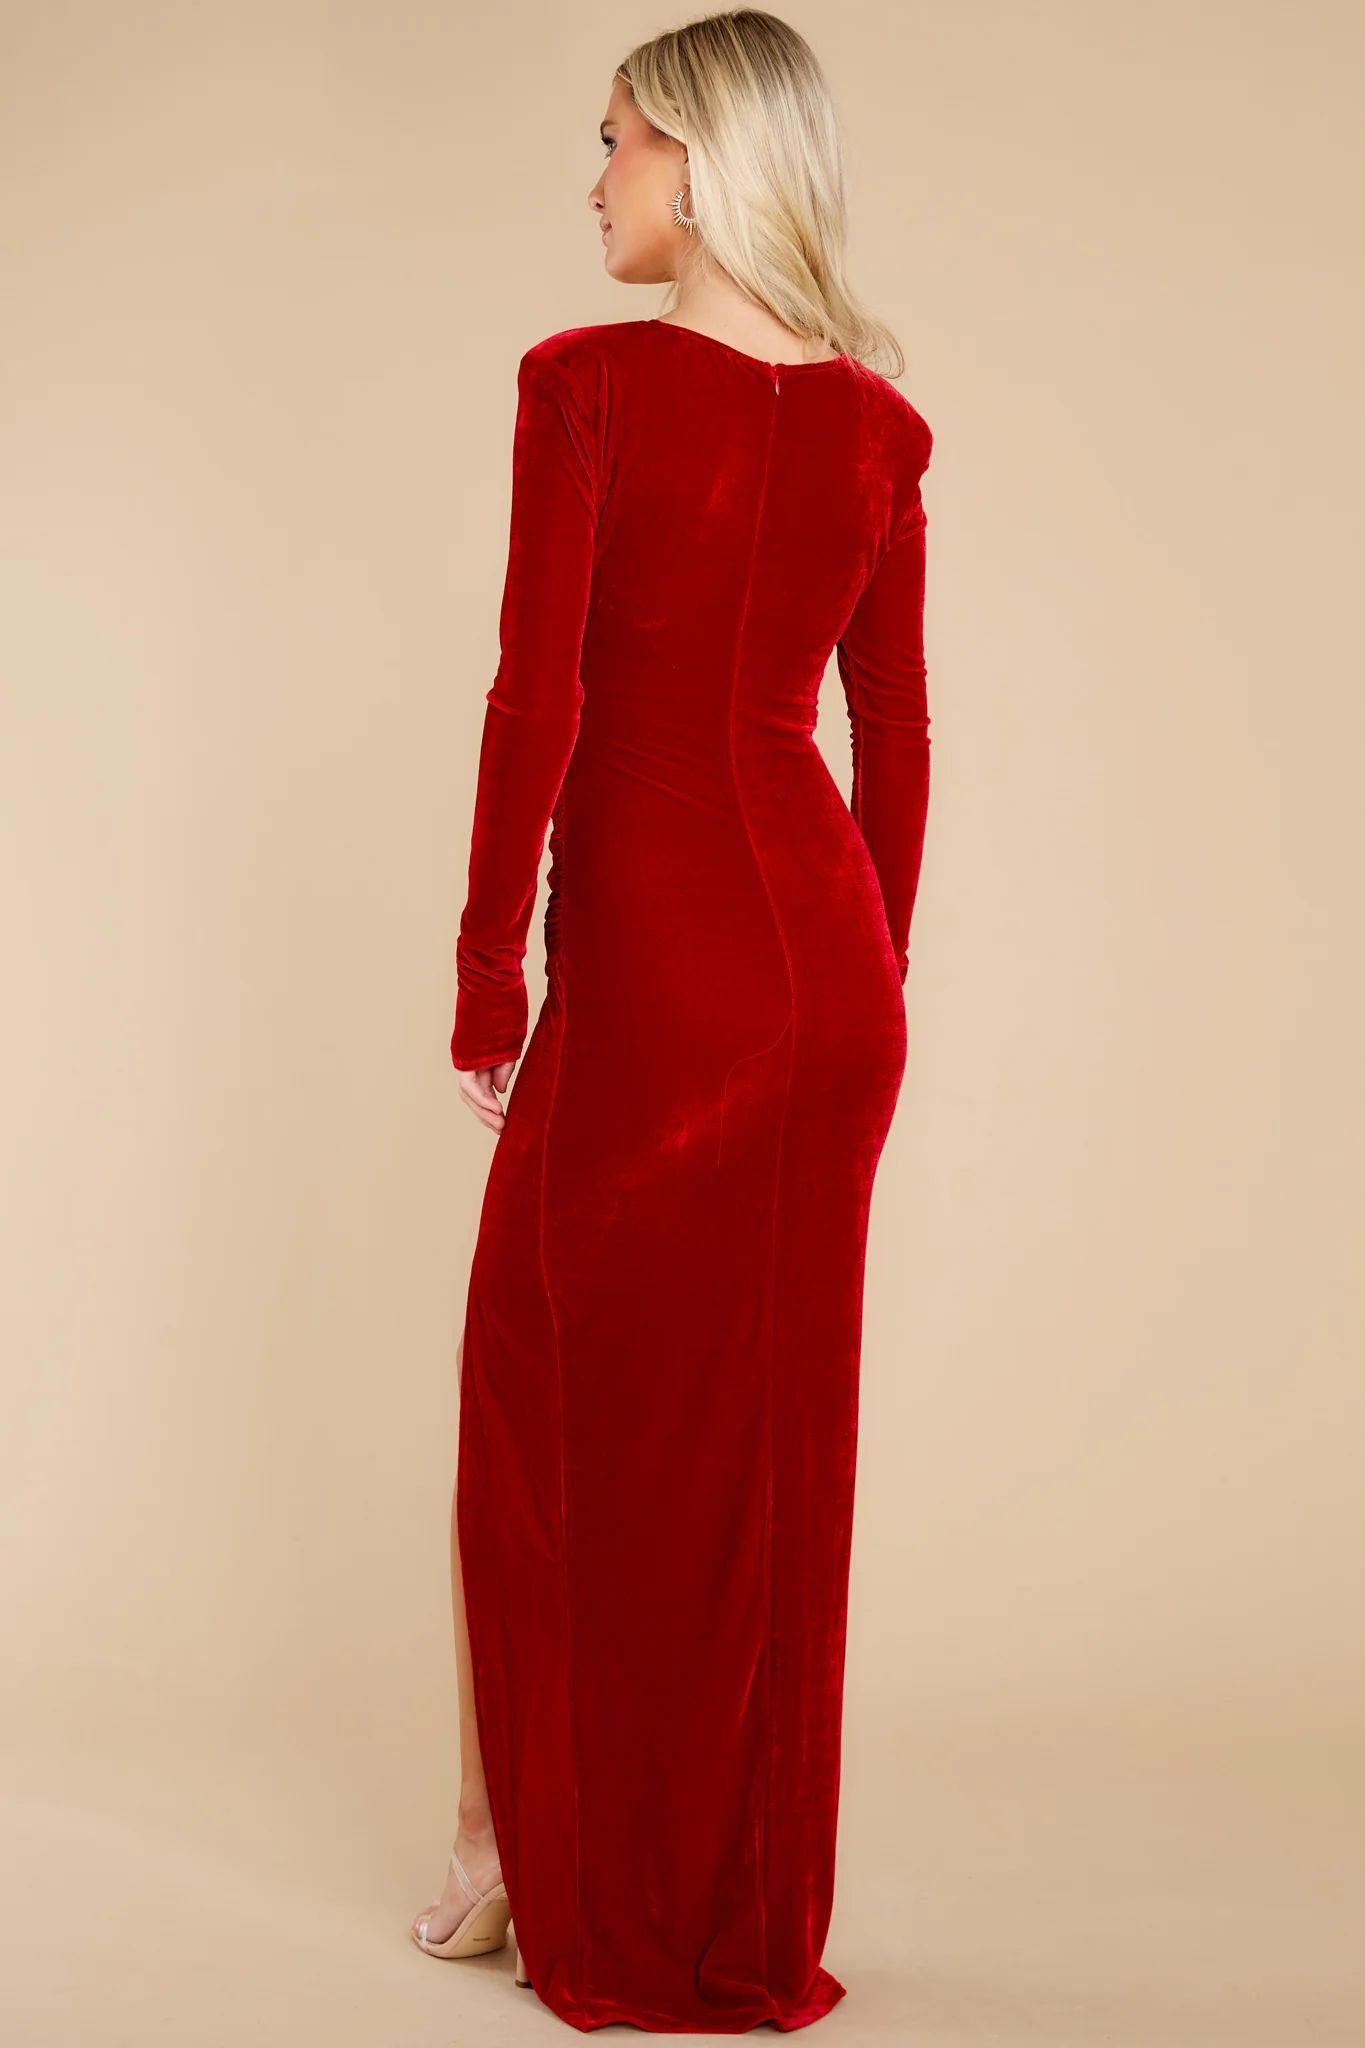 All Eyes On You Red Velvet Maxi Dress | Red Dress 